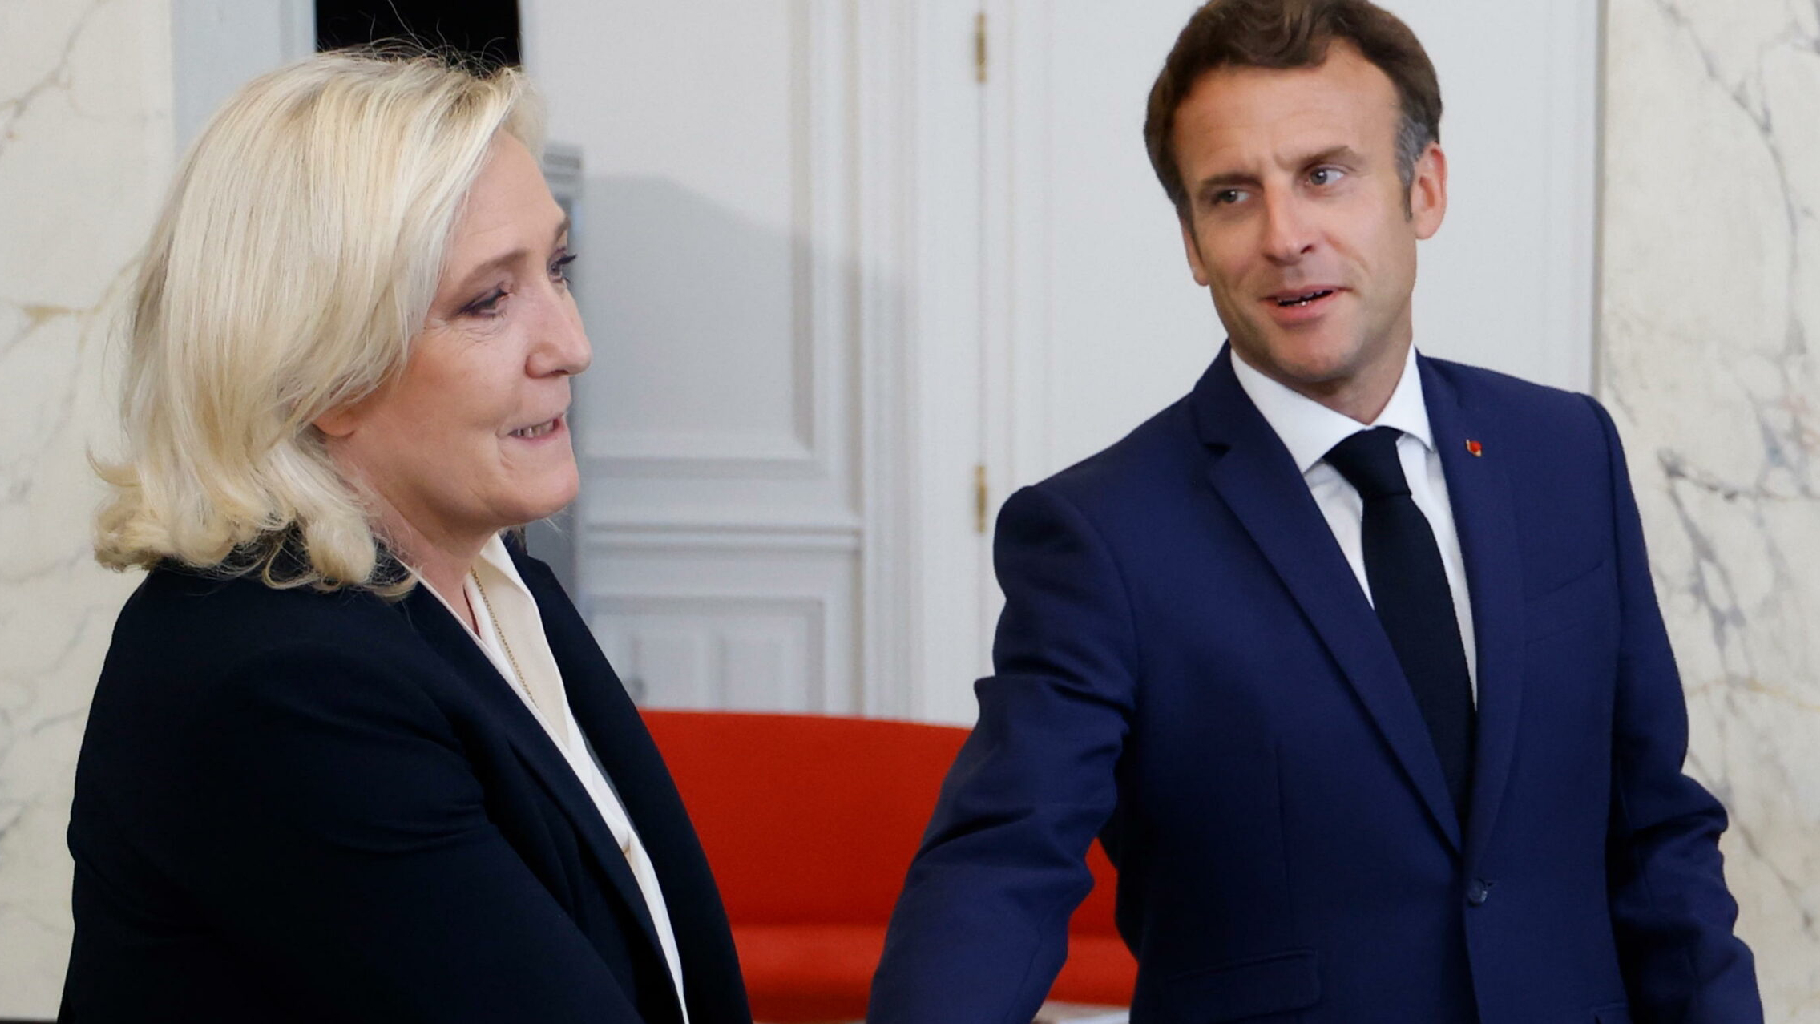 Francia al voto, il thriller che tiene col fiato sospeso l’Europa